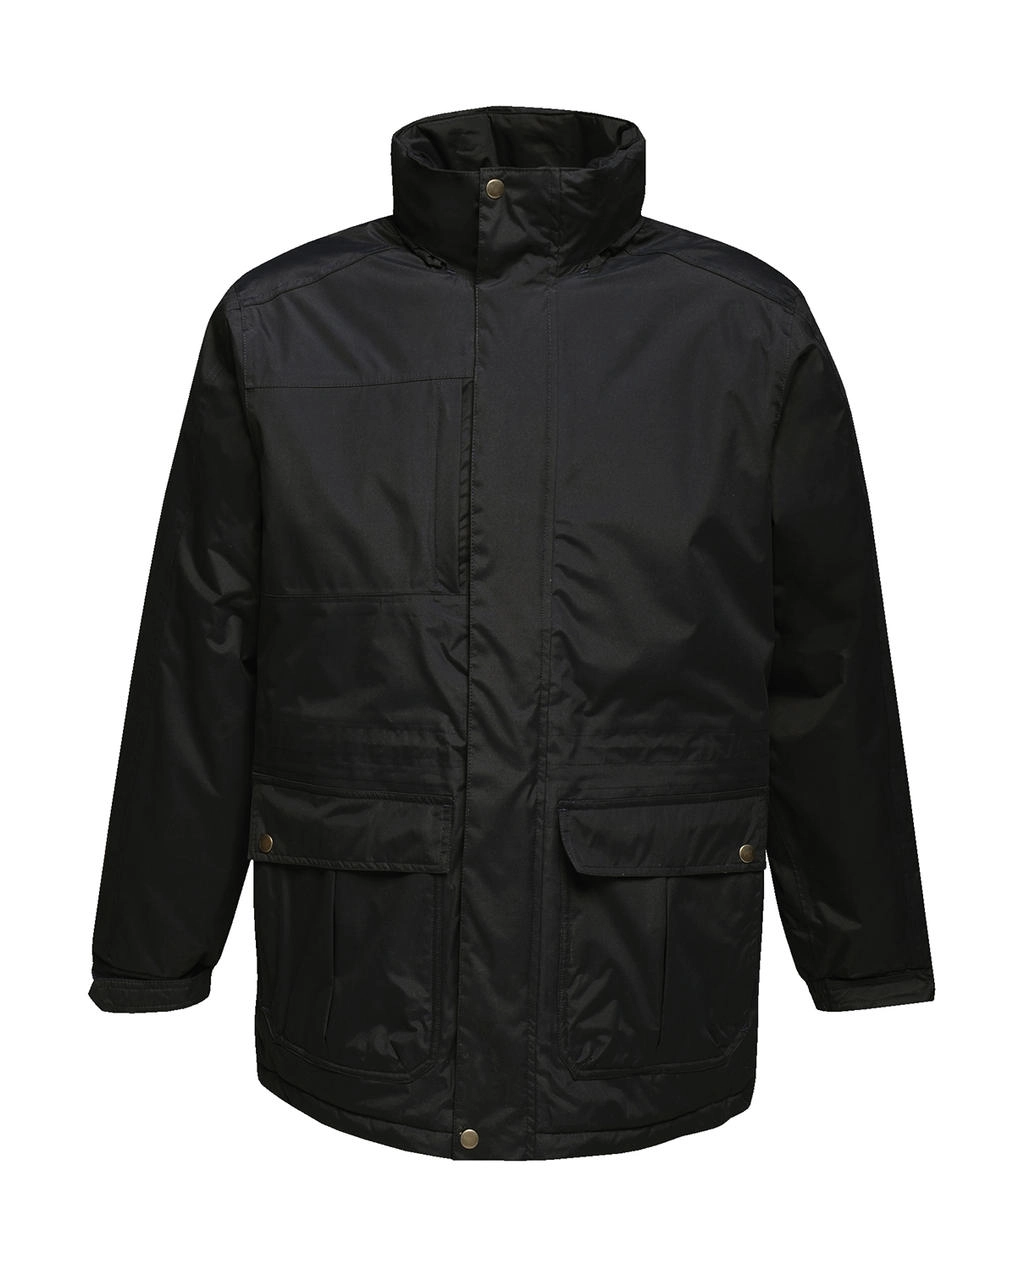 Darby III Jacket zum Besticken und Bedrucken in der Farbe Black mit Ihren Logo, Schriftzug oder Motiv.